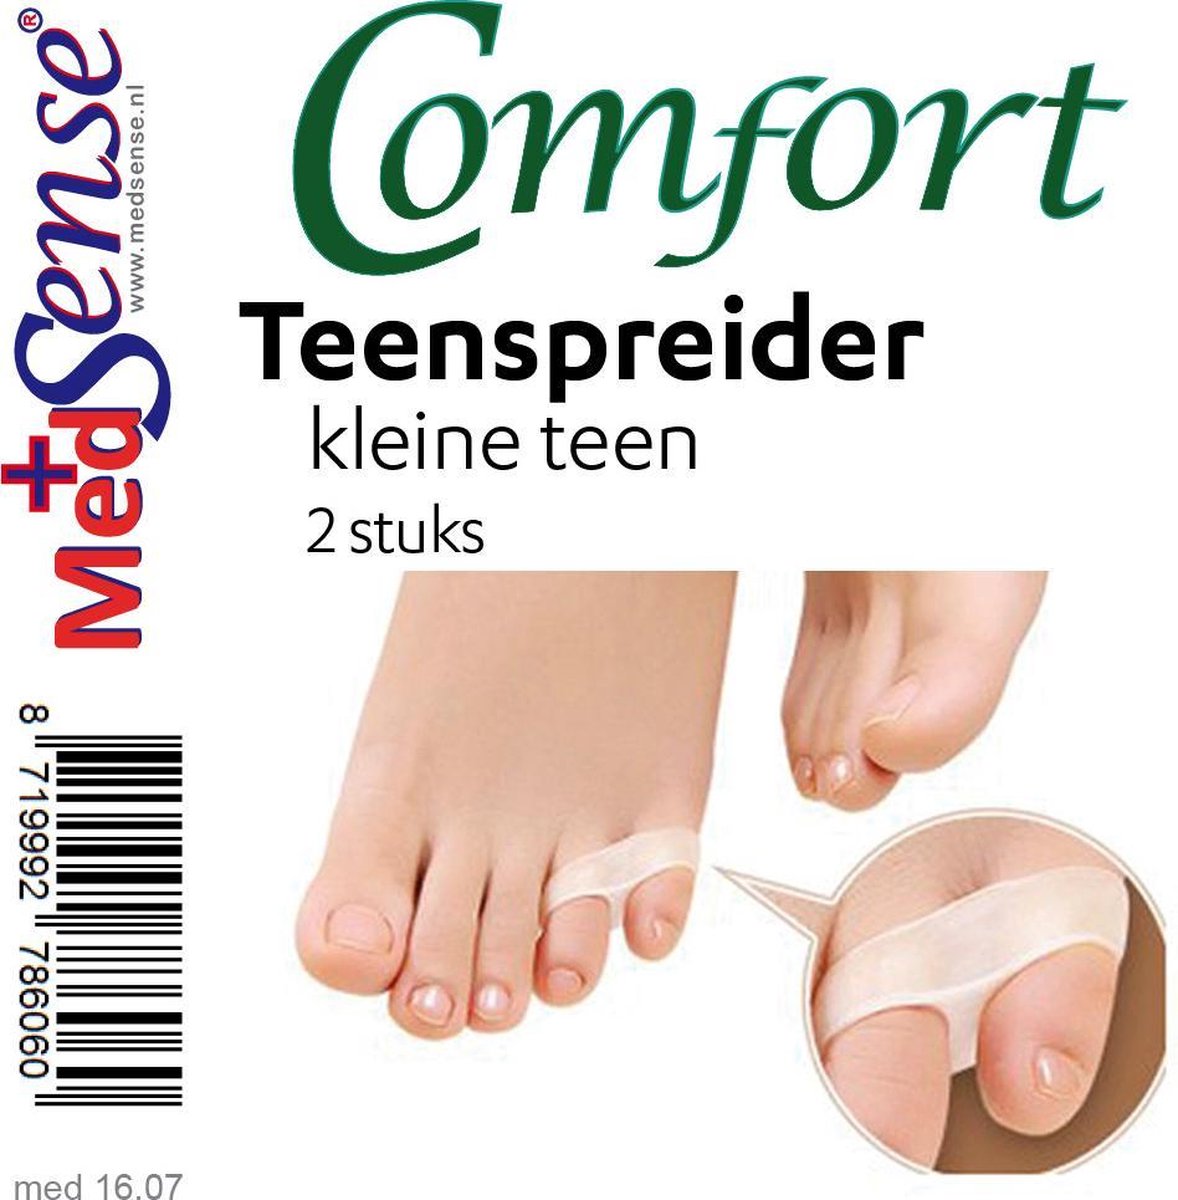 Comfort teenspreider, kleine teen- 2 st